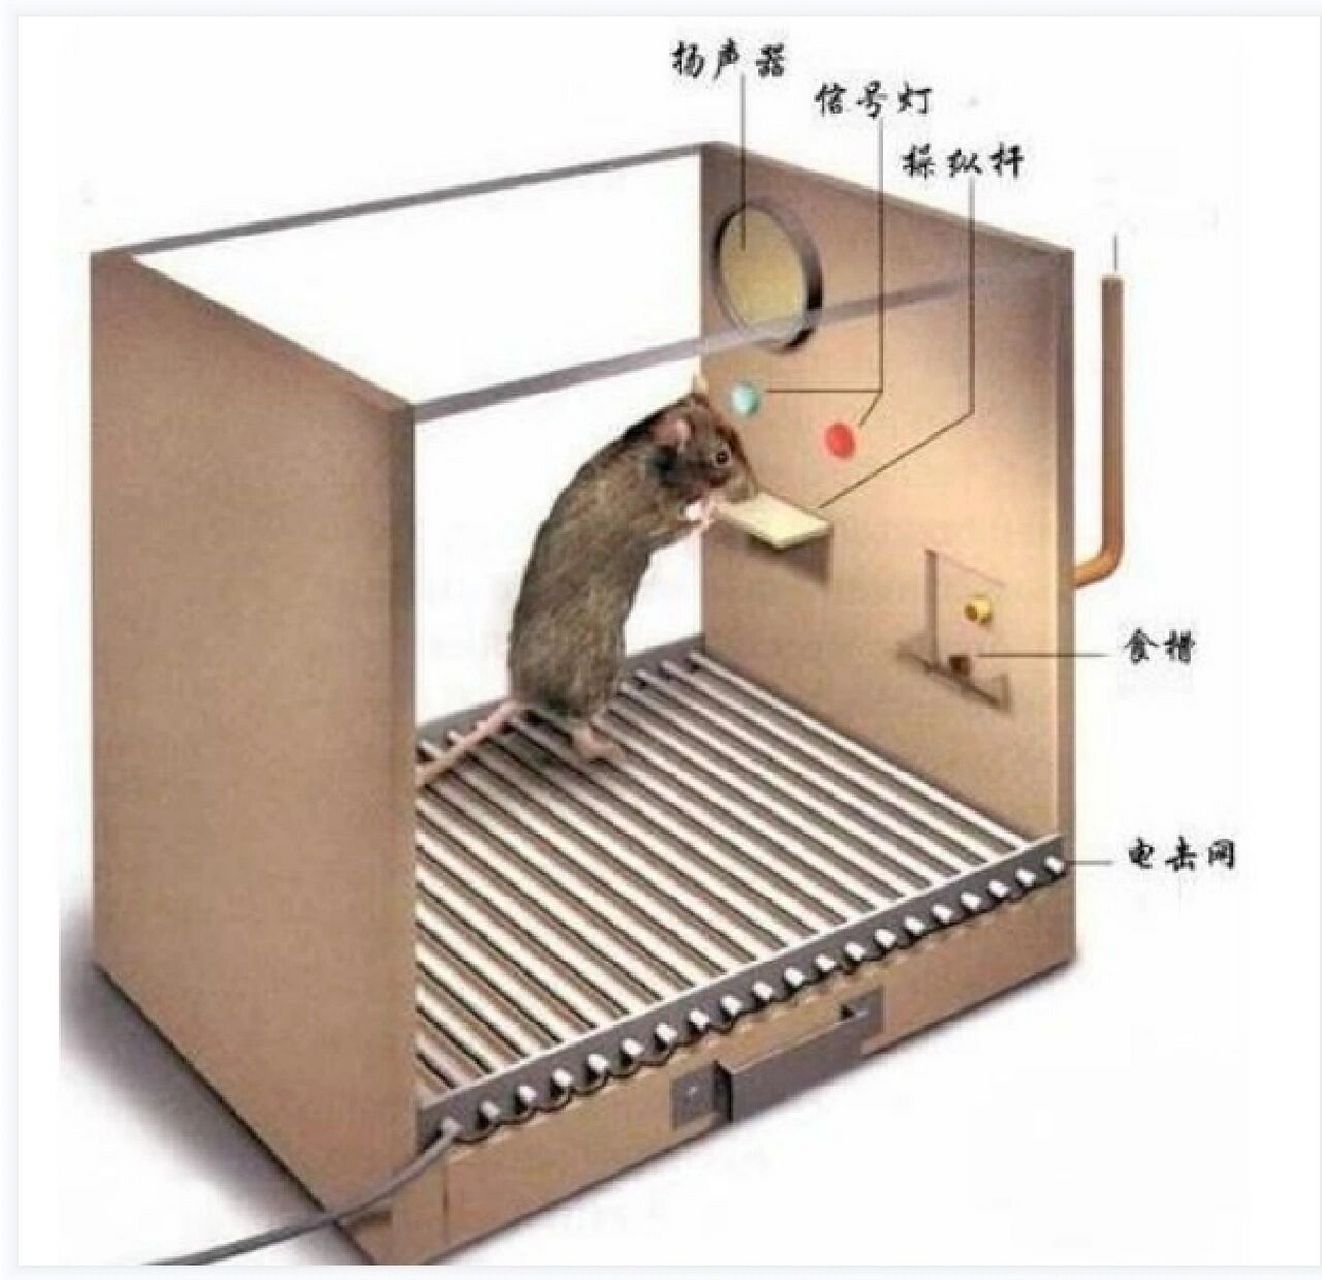 心理学实验——斯金纳的小白鼠 斯金纳通过饿鼠实验提出了操作性条件